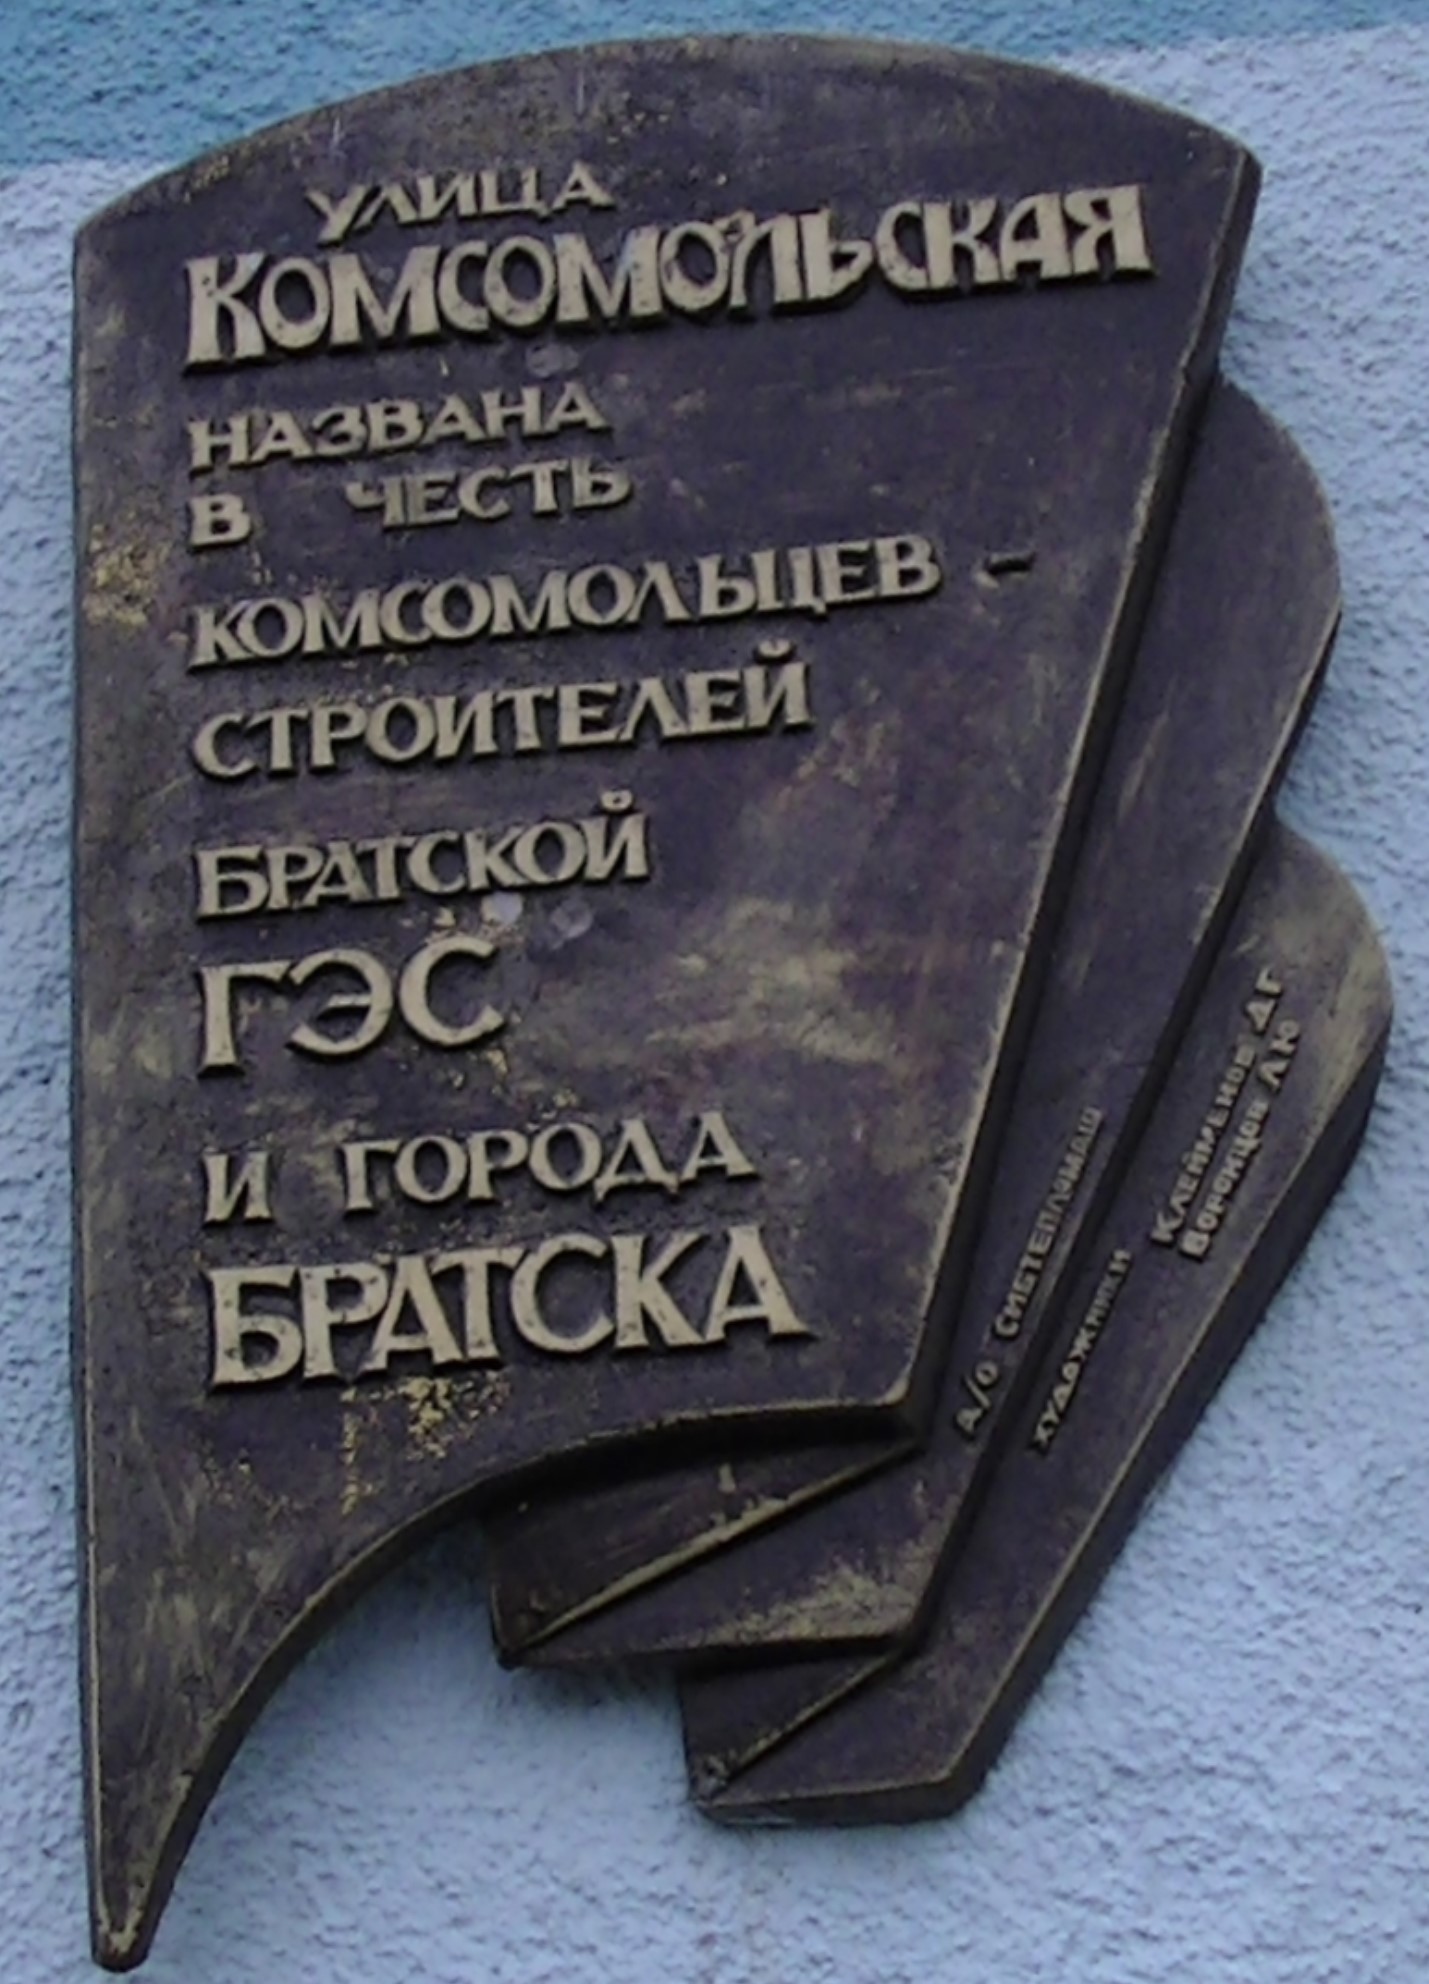 Мемориальная_доска_комсомольцам_-_строителям_Братской_ГЭС_и_города_Братска